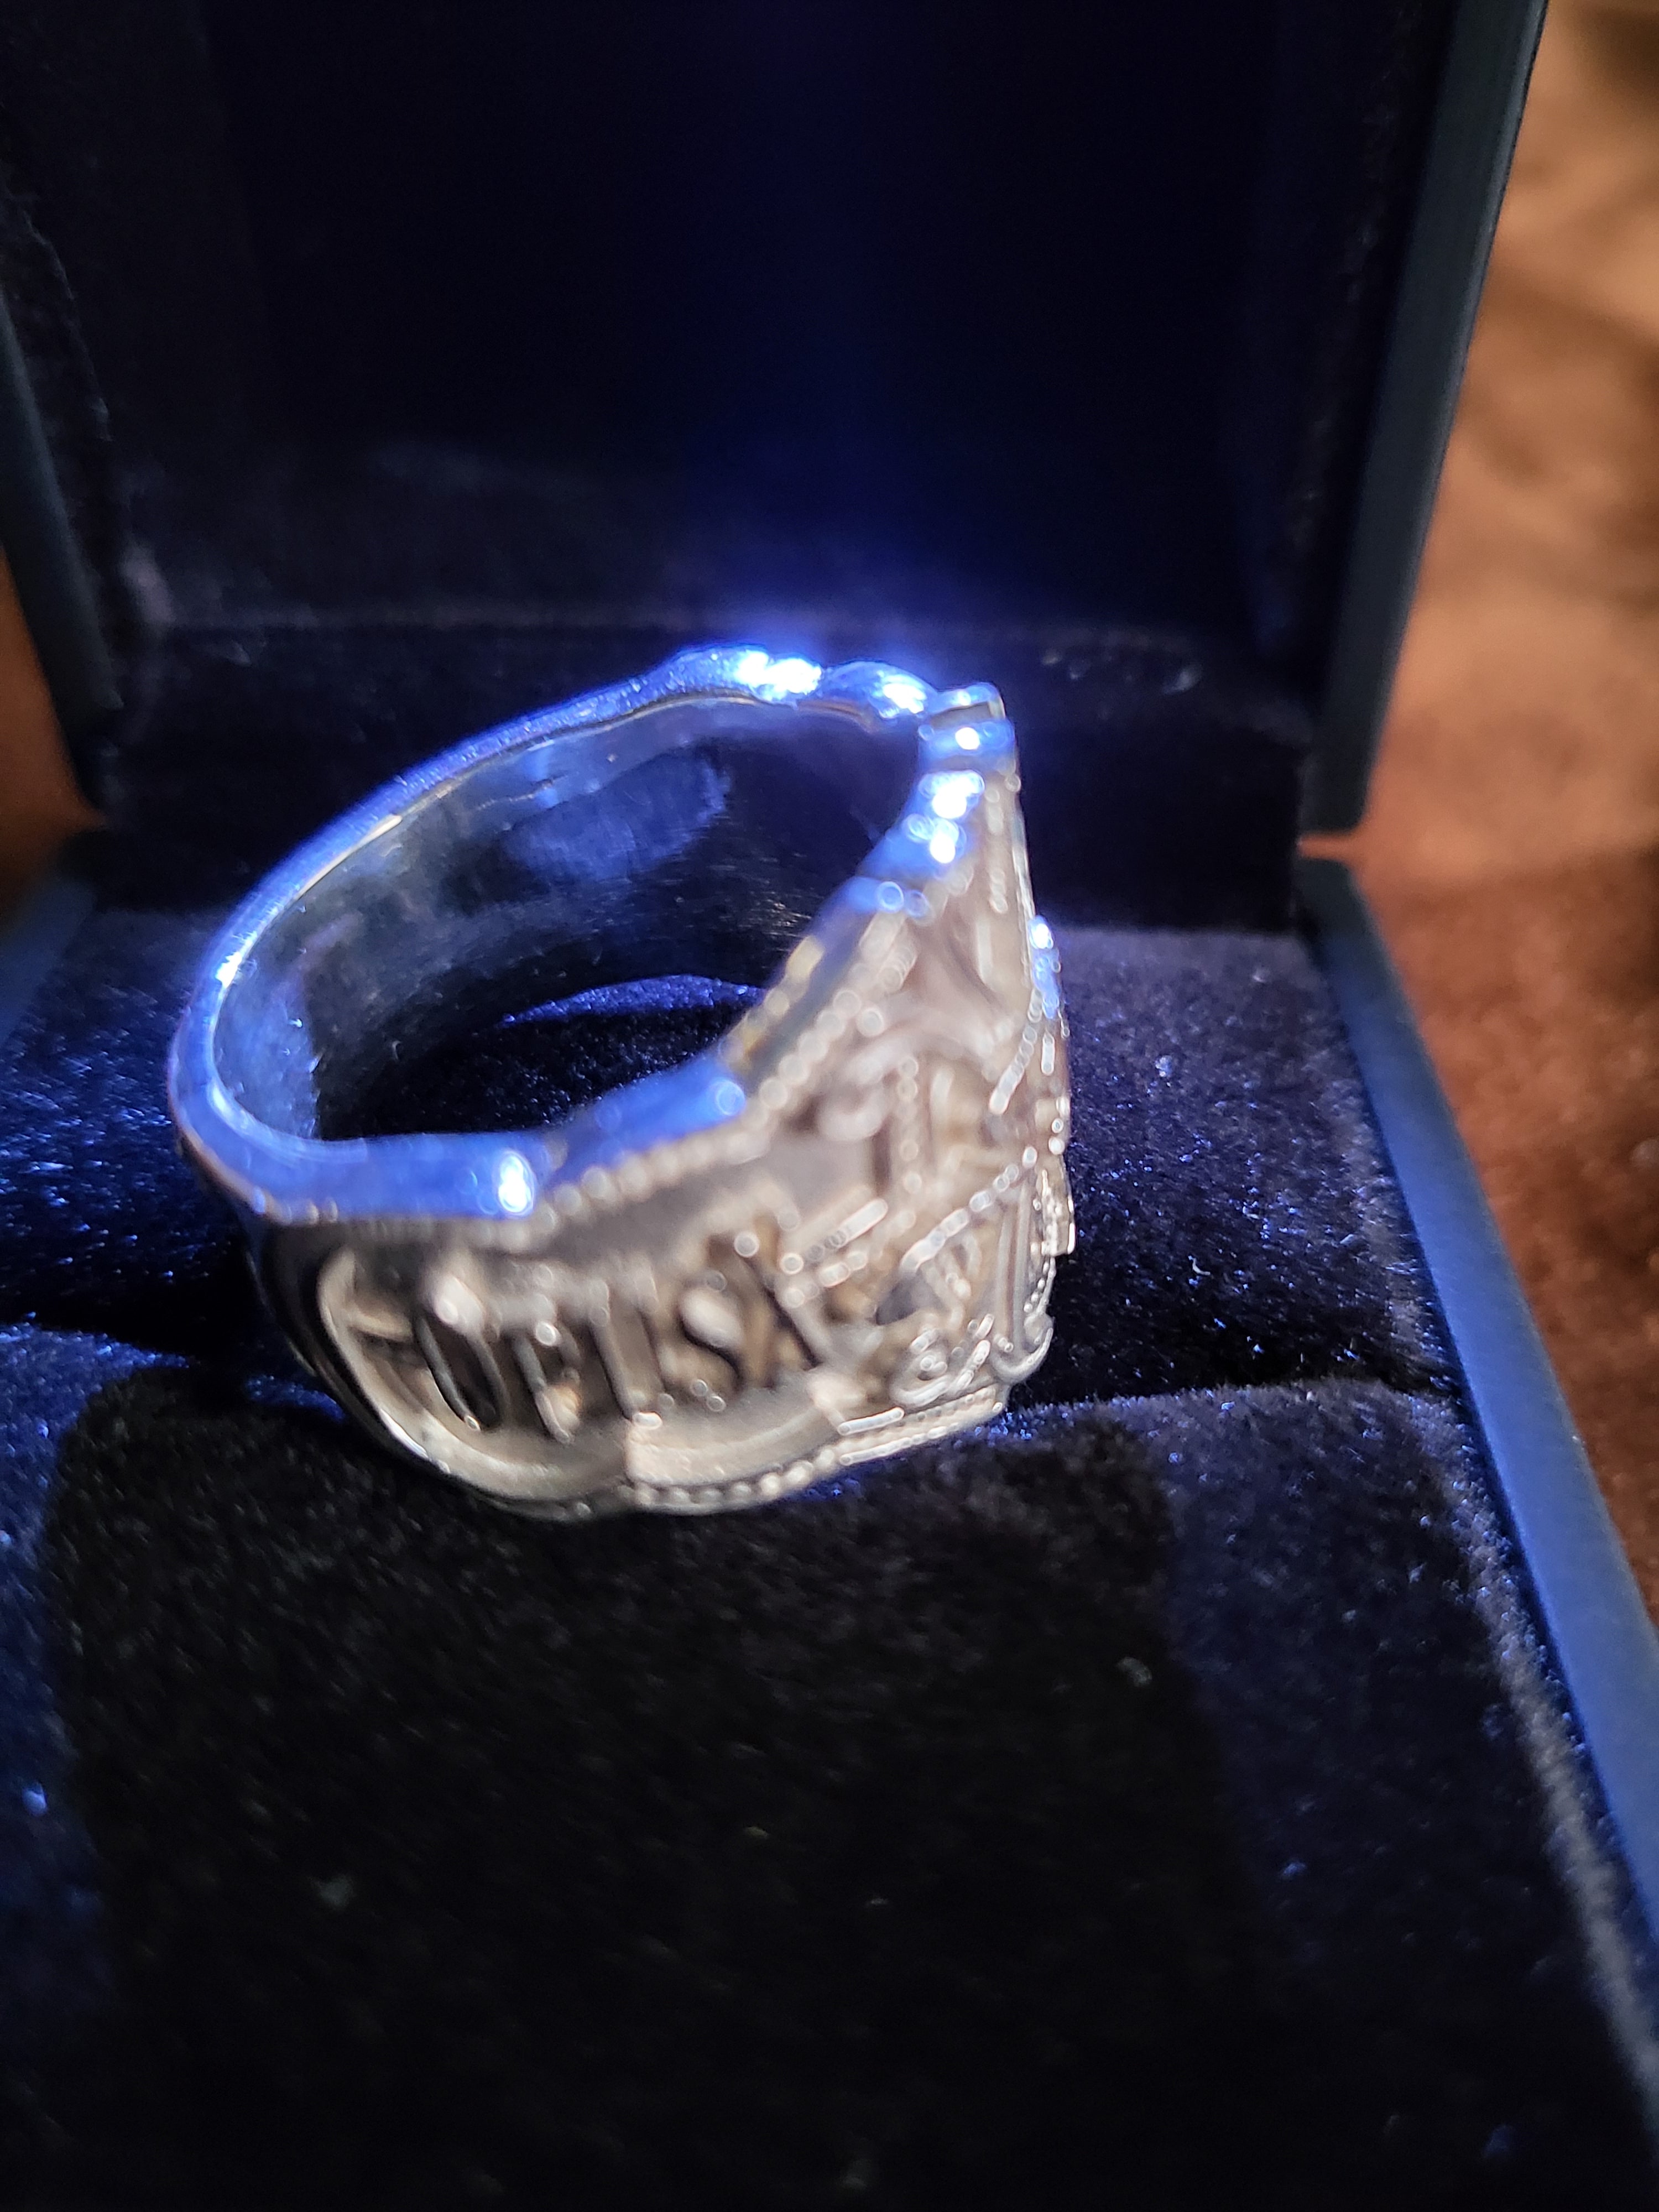 Custom Men's Rings | Design Your Own Men's Ring | CustomMade.com